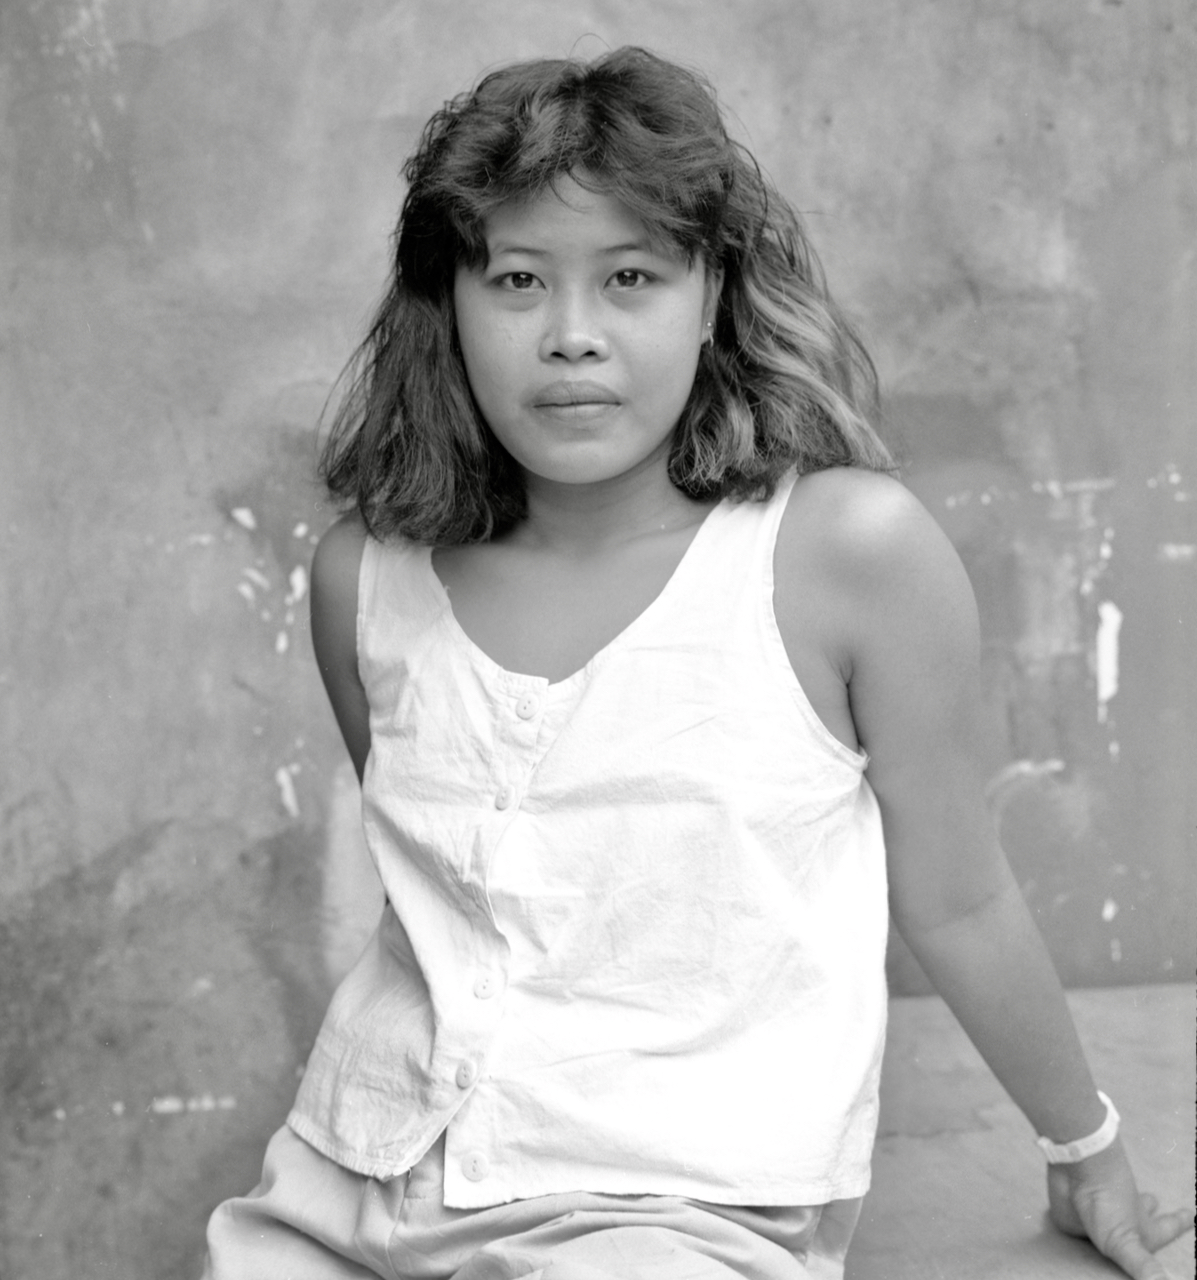 Peter's Friend, Subic City 1989